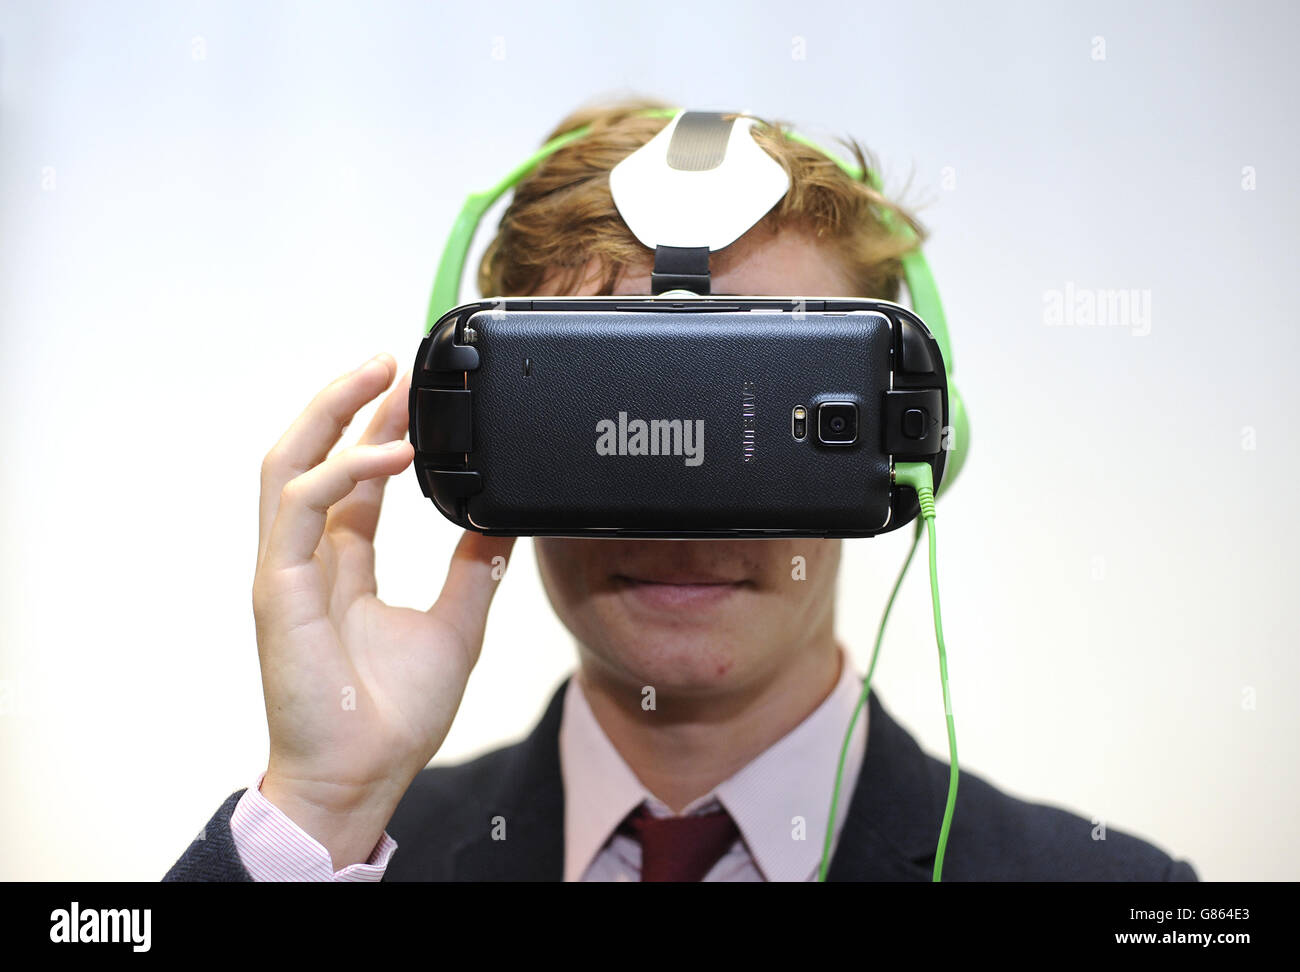 Un visiteur utilise un casque Samsung Gear VR avec des balayages 3D virtuels d'objets de la section Bronze Age du British Museum, à Londres, avant leur week-end de réalité virtuelle le 8 août. Banque D'Images